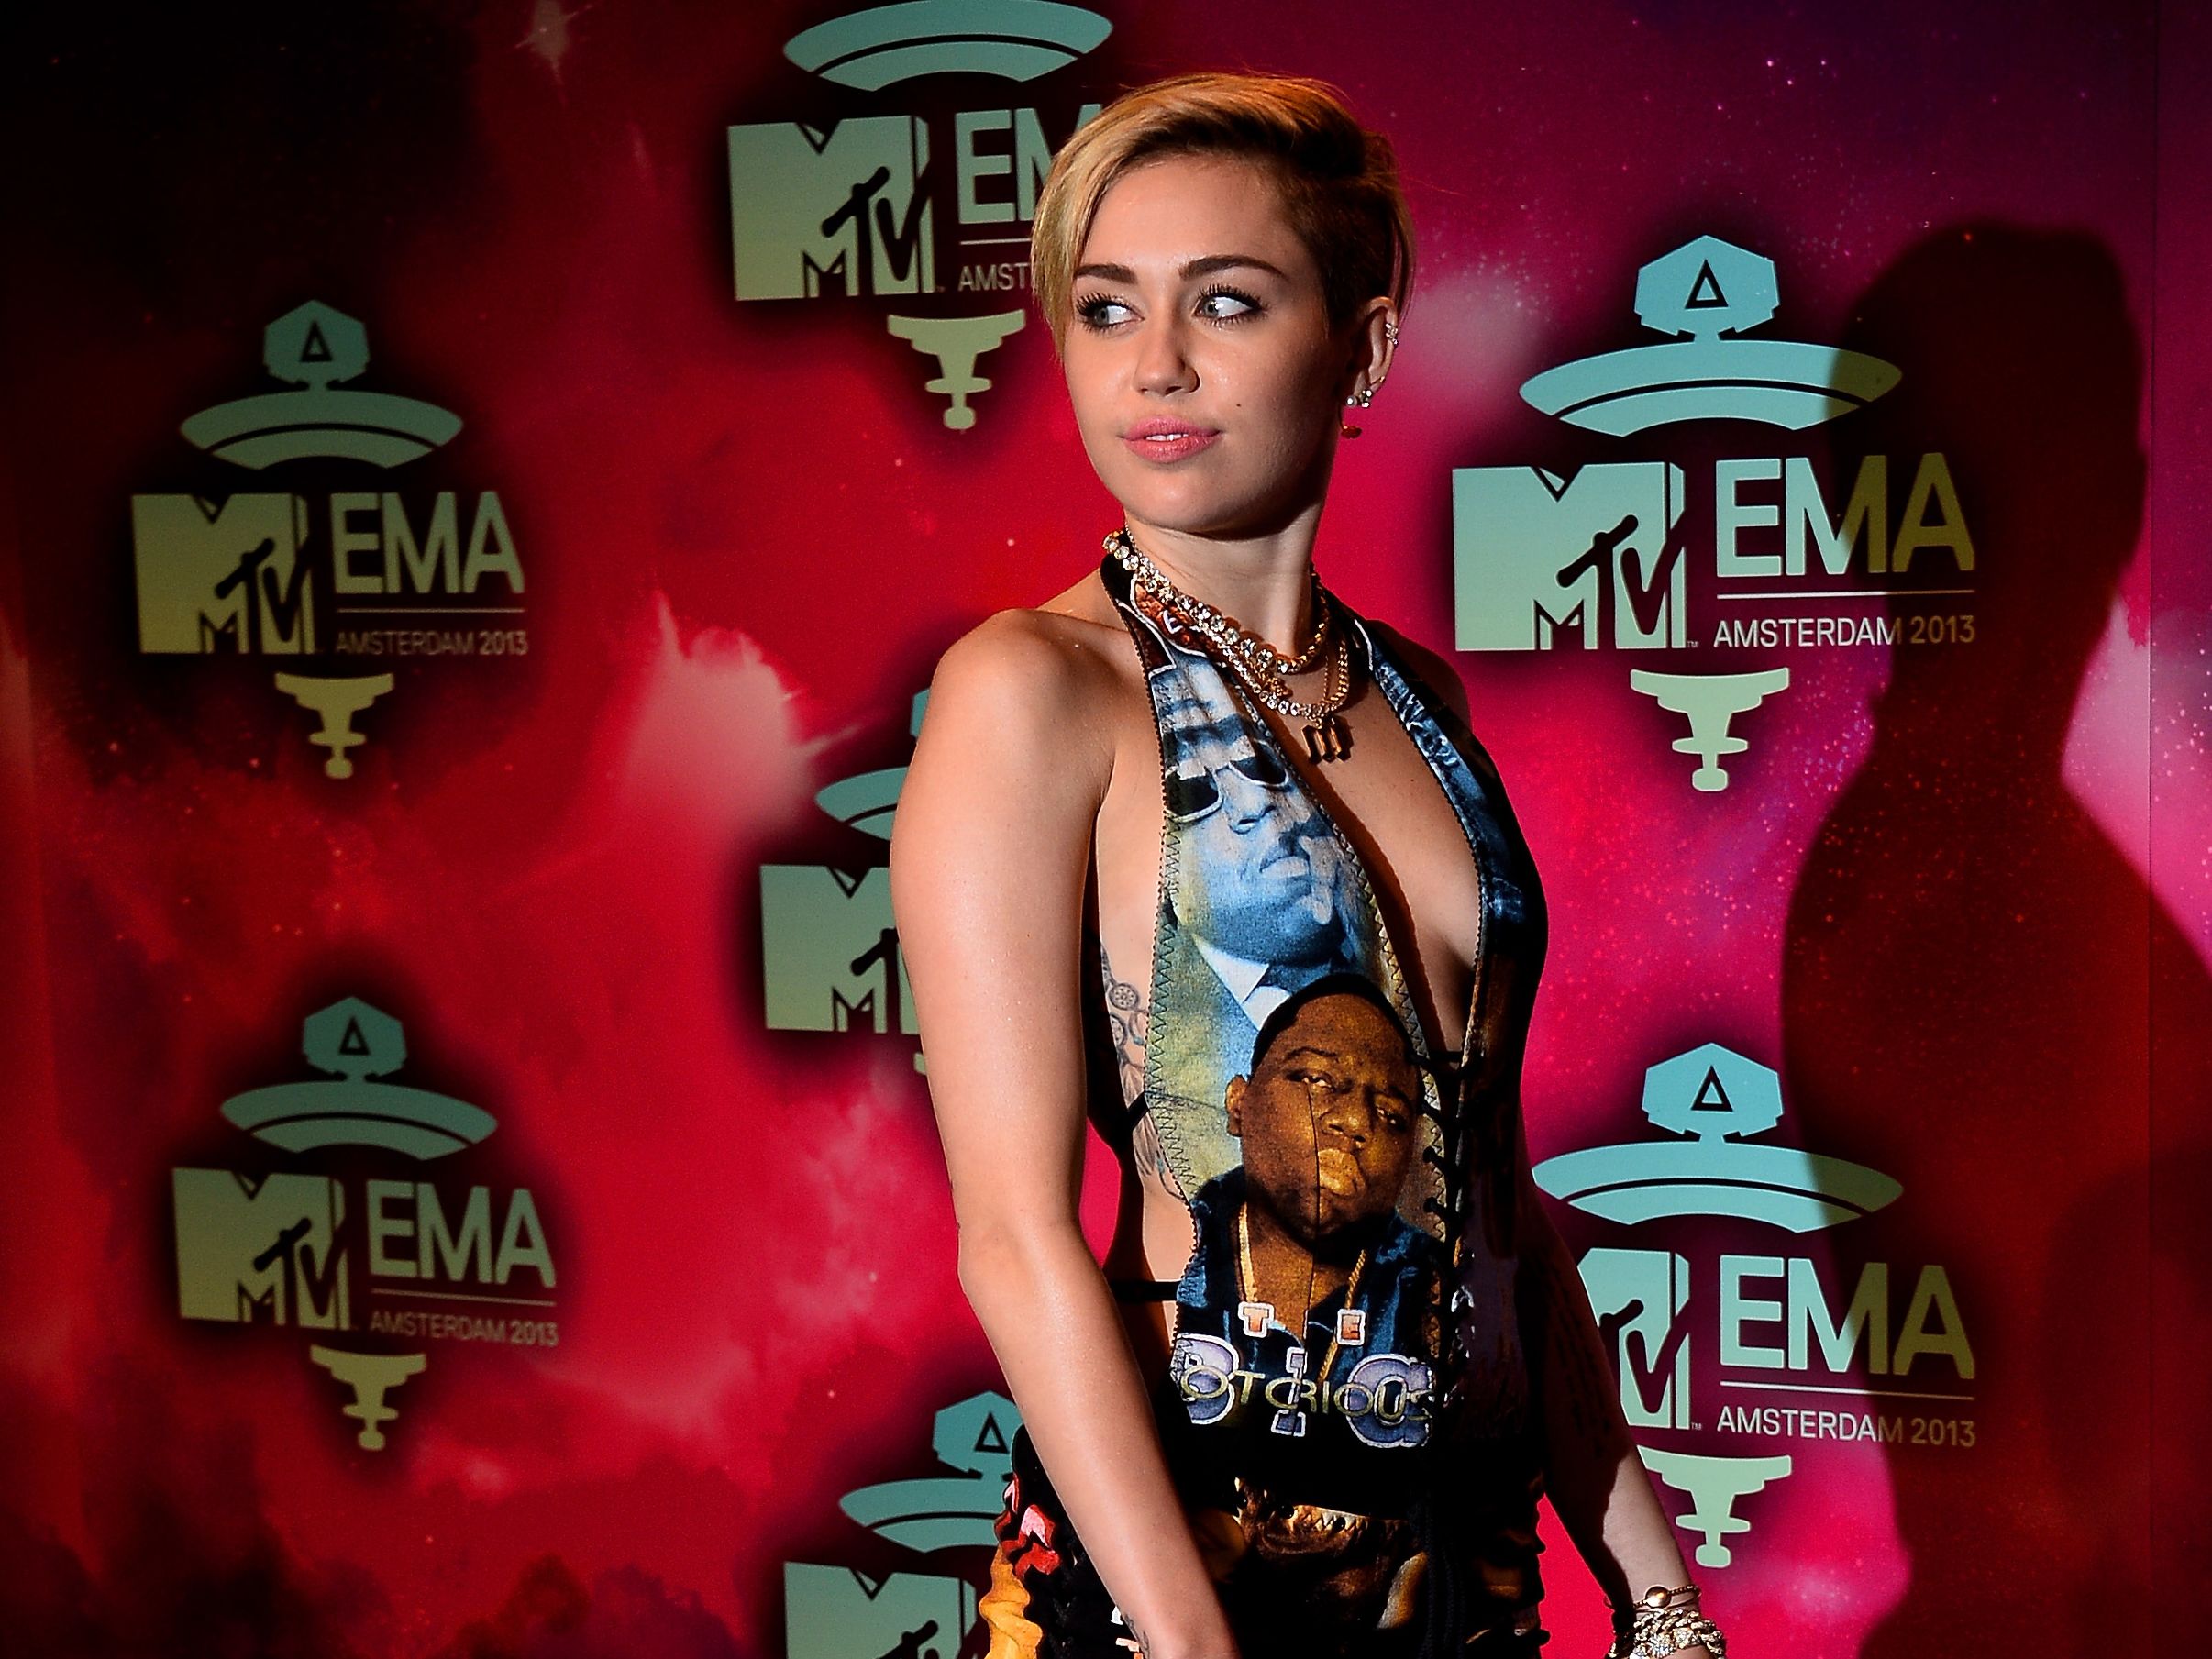 Miley Cyrus Porn Parody Pov - Miley Cyrus on 'SNL': 'Hannah Montana' is dead | CNN